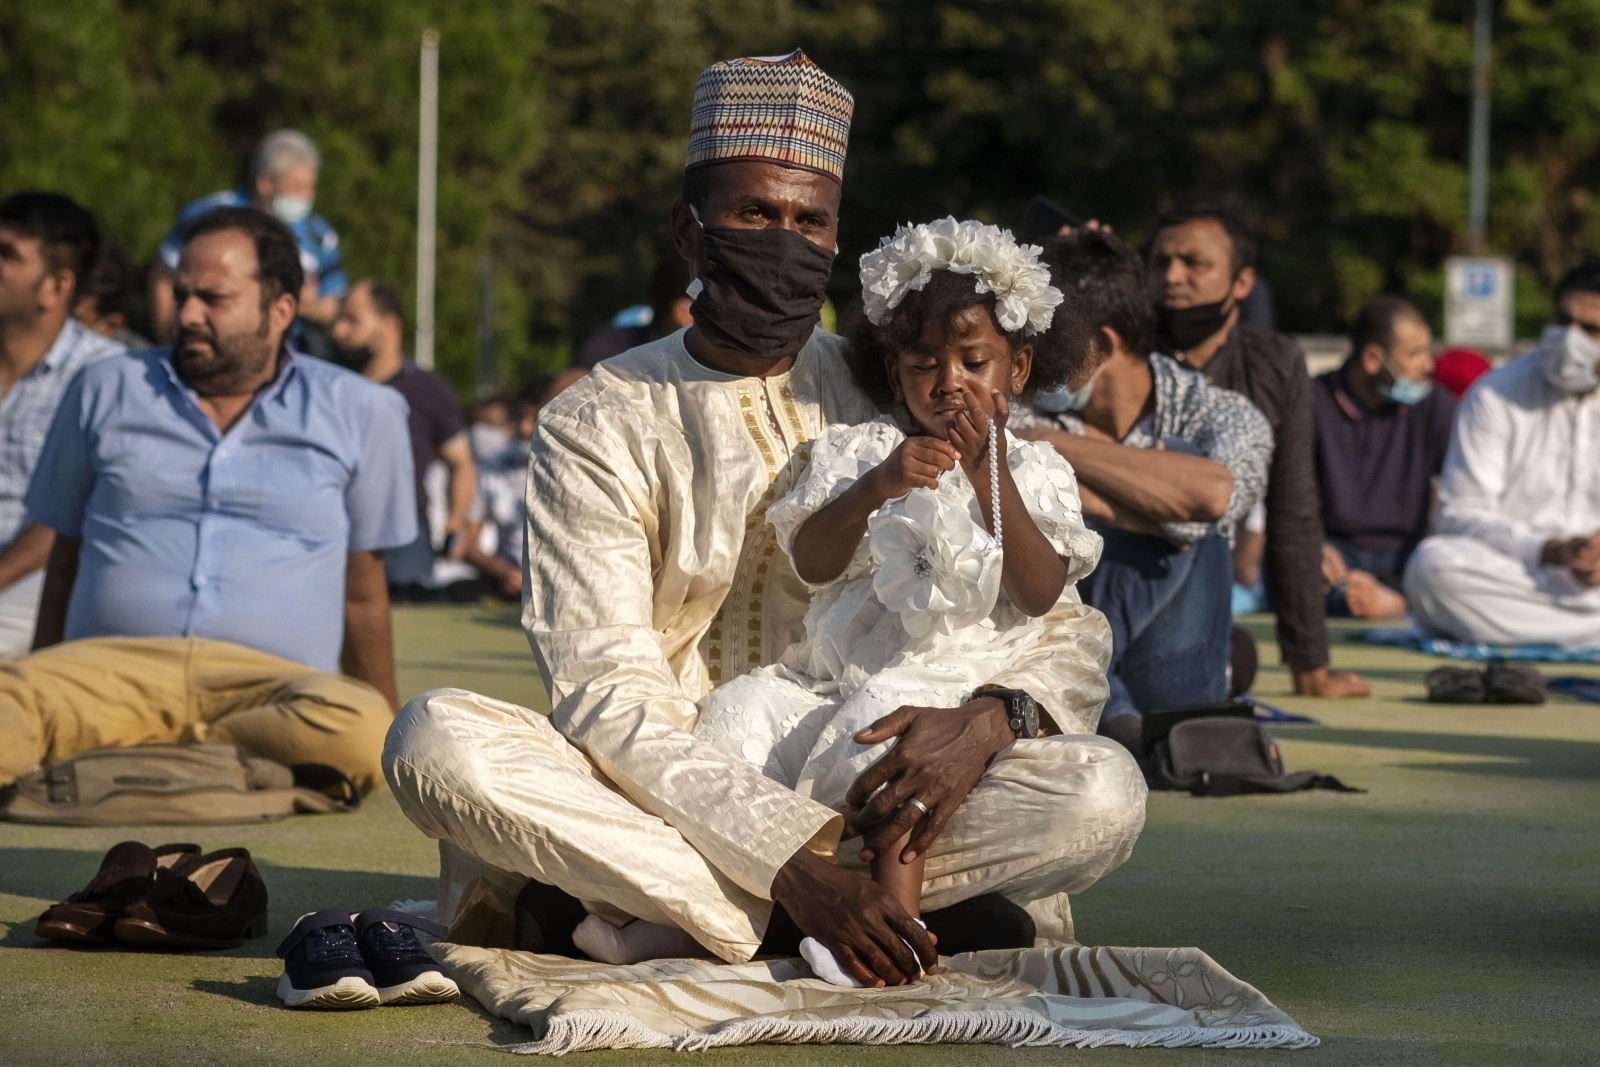 La festa del Sacrificio: “Eid al-Adha”, al parco del Valentino di Torino in osservanza al decreto di distanziamento per la pandemia Covid19 